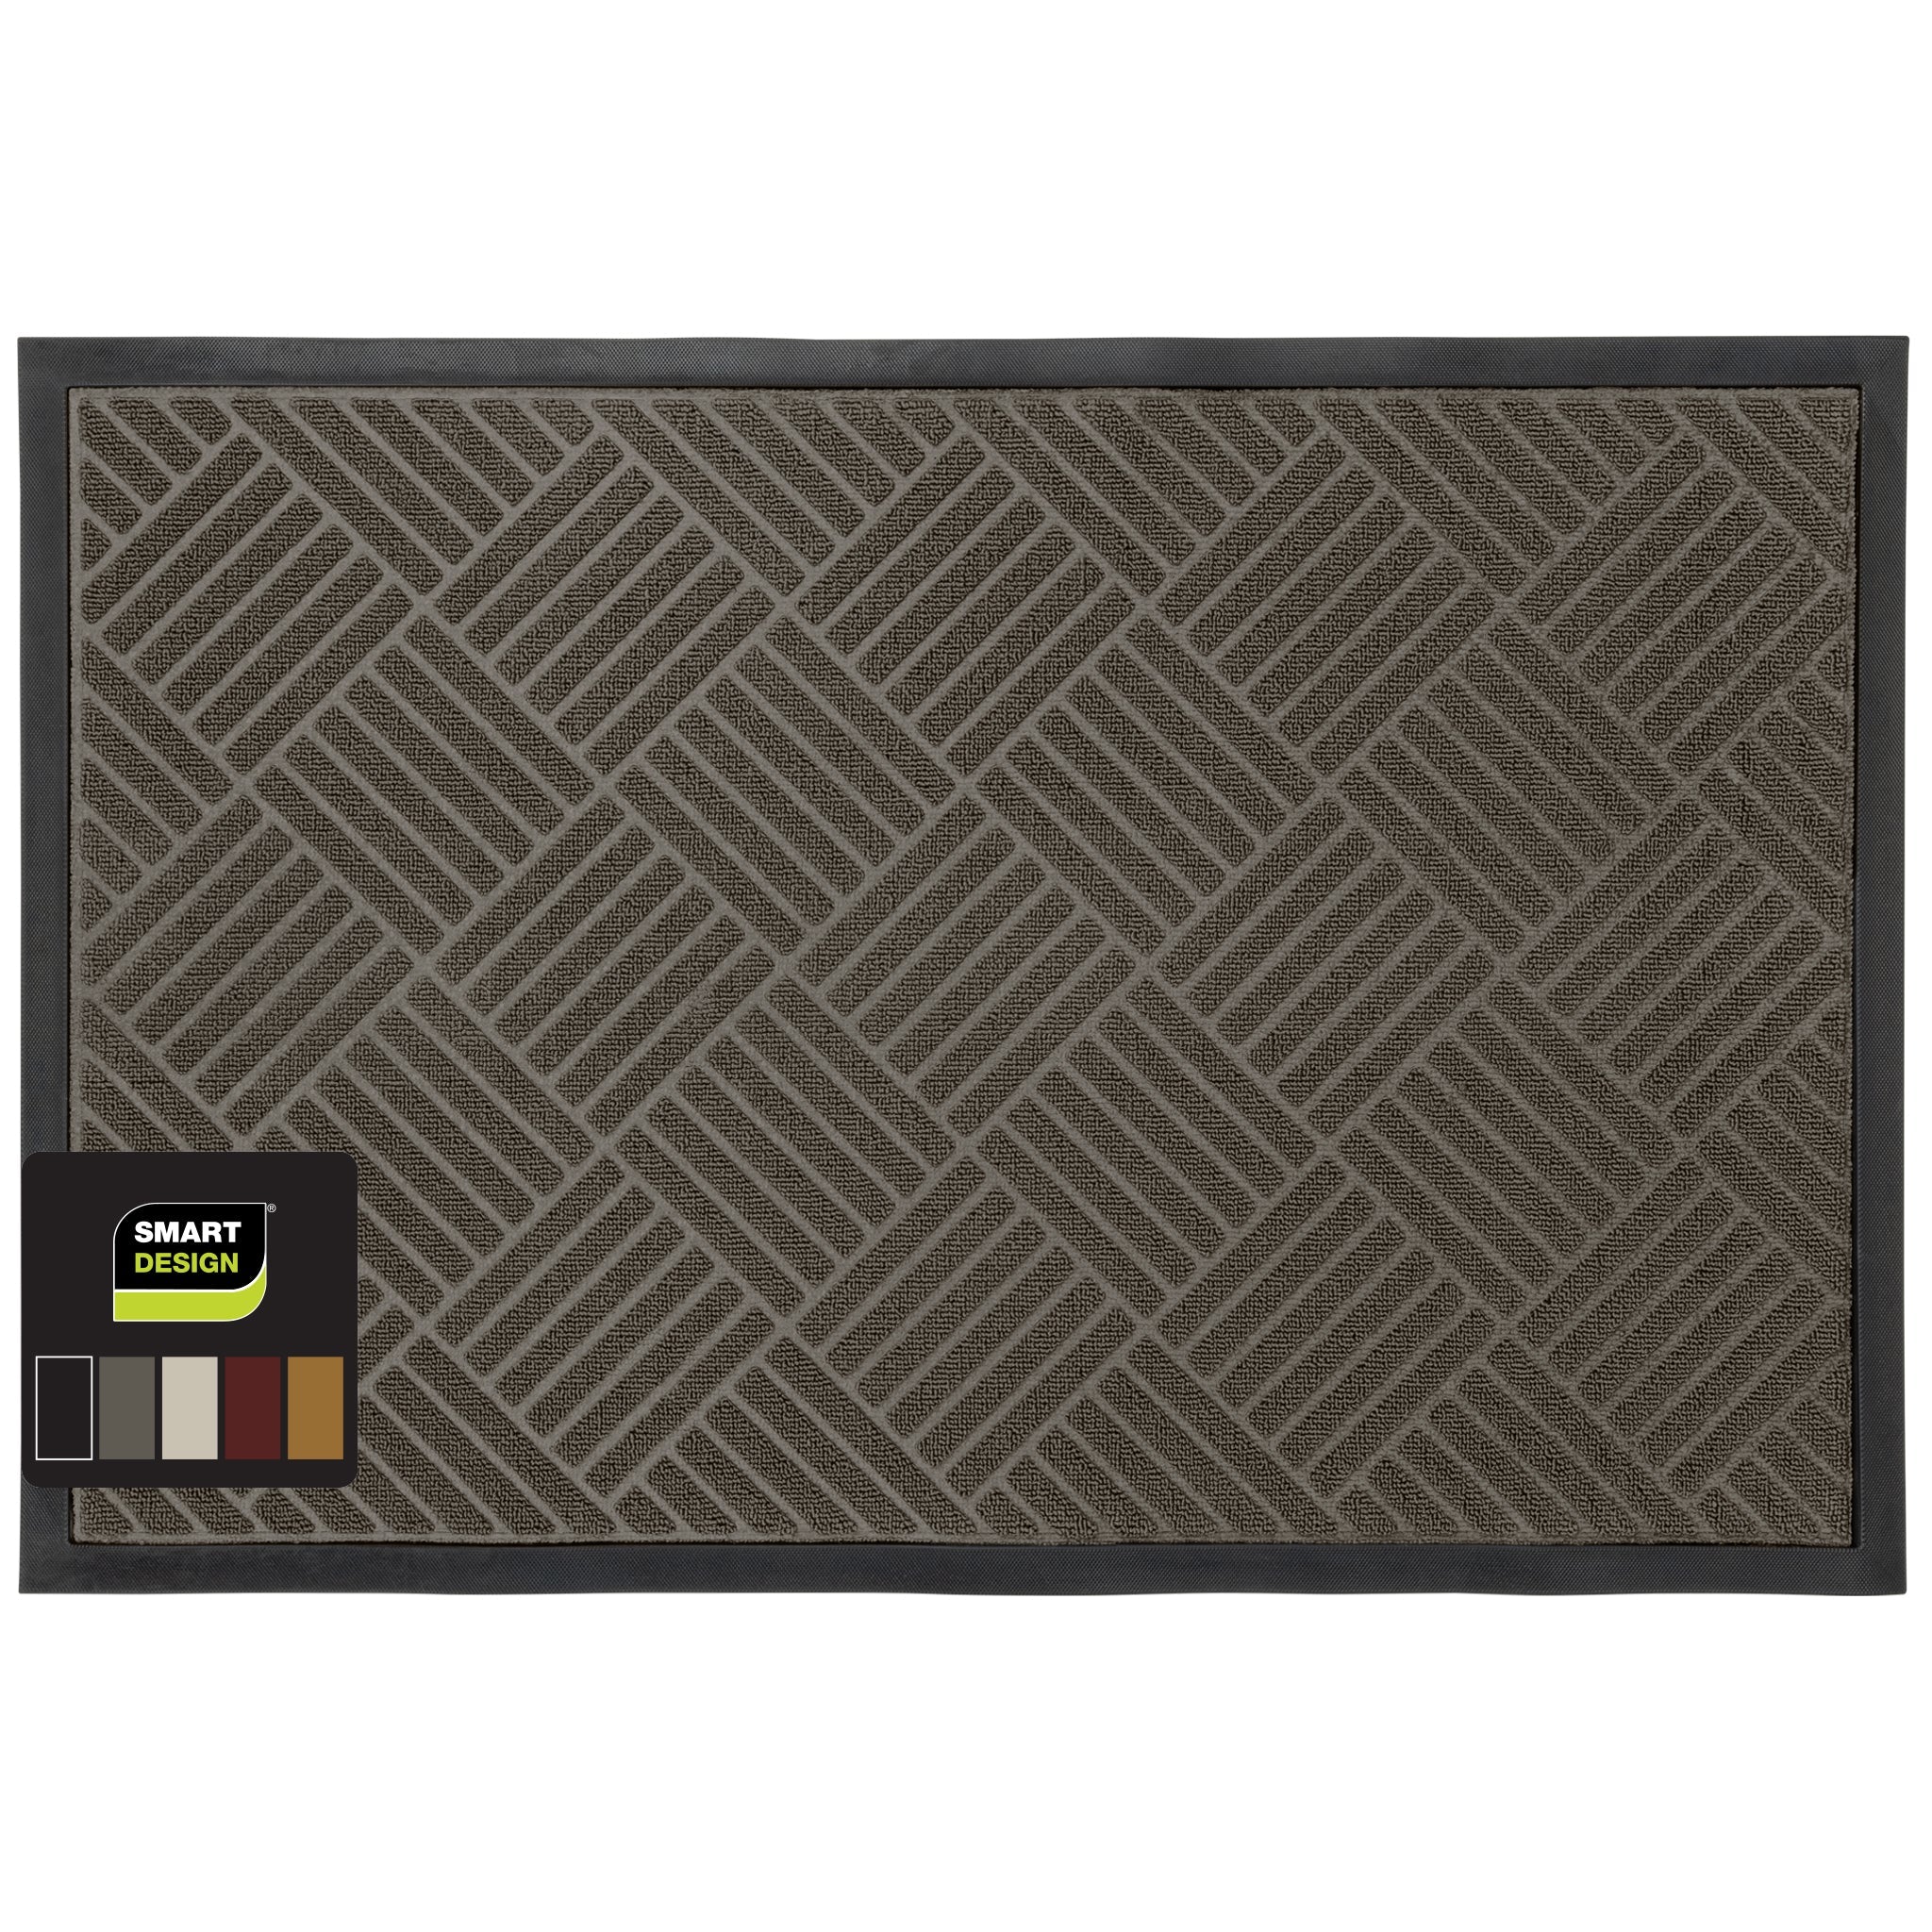 DEXI Door Mat Indoor Outdoor Durable Rubber Doormat, Waterproof